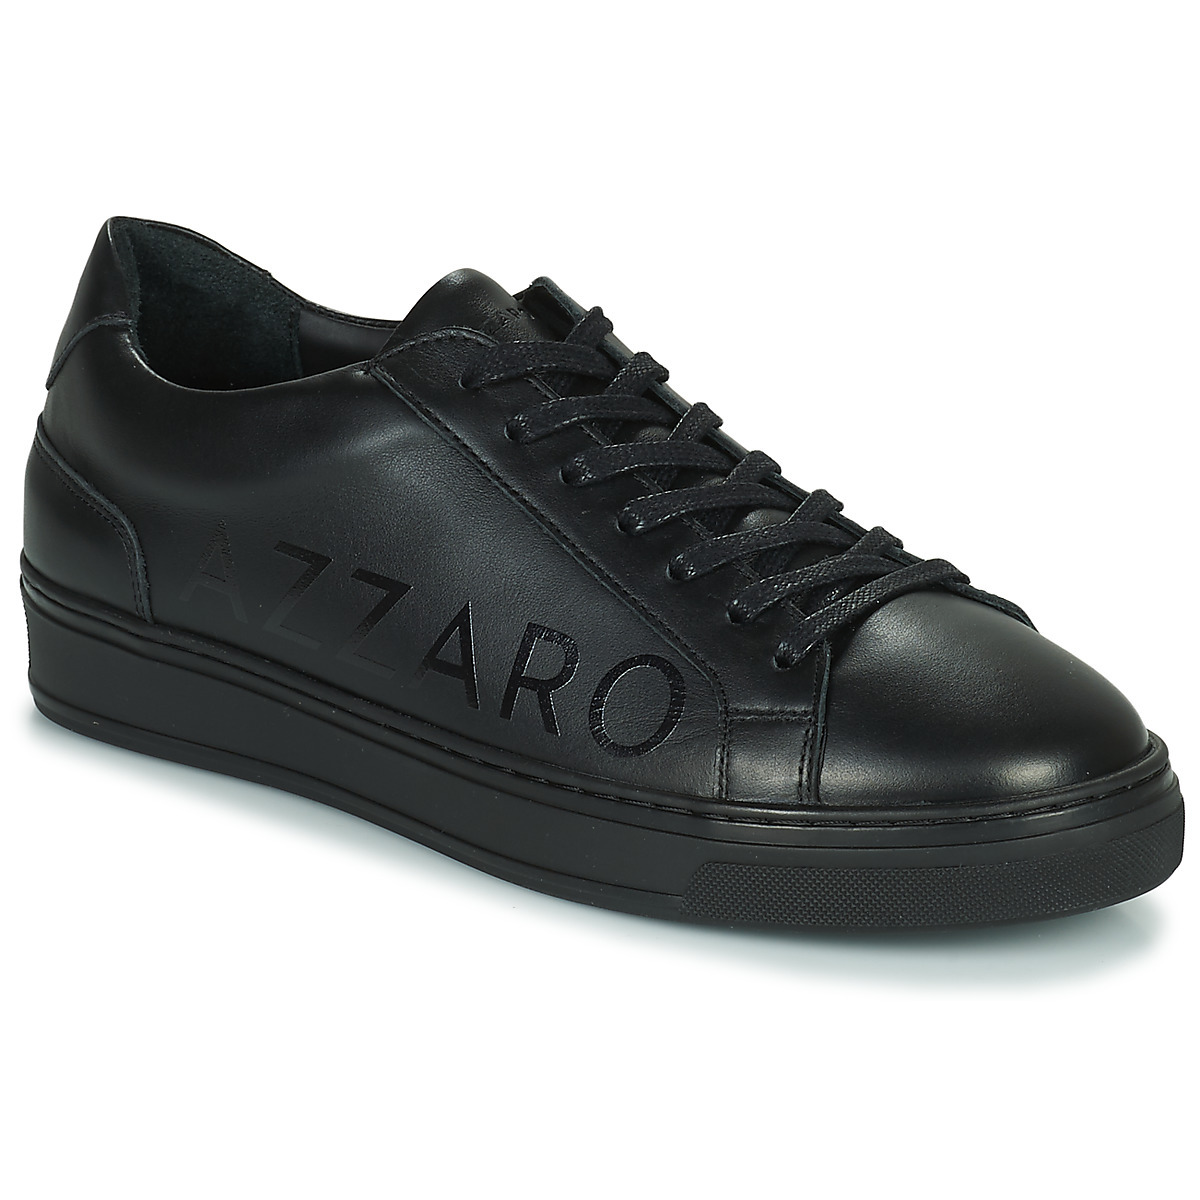 Spartoo Man Black Sneakers by Azzaro GOOFASH